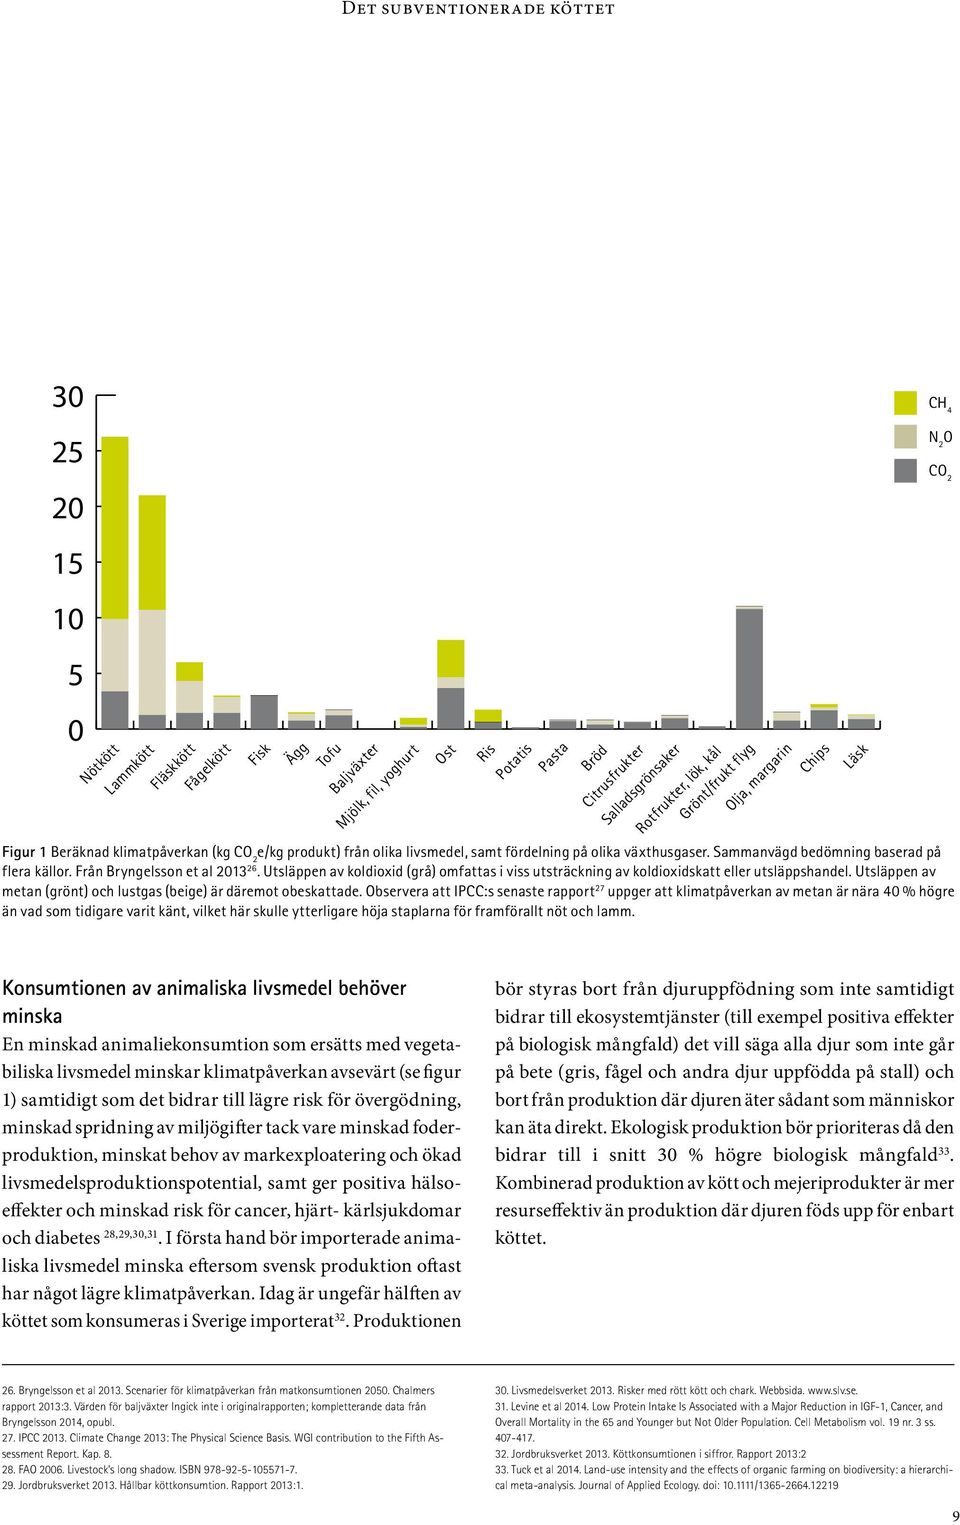 Från Bryngelsson et al 2013 26. Utsläppen av koldioxid (grå) omfattas i viss utsträckning av koldioxidskatt eller utsläppshandel. Utsläppen av metan (grönt) och lustgas (beige) är däremot obeskattade.